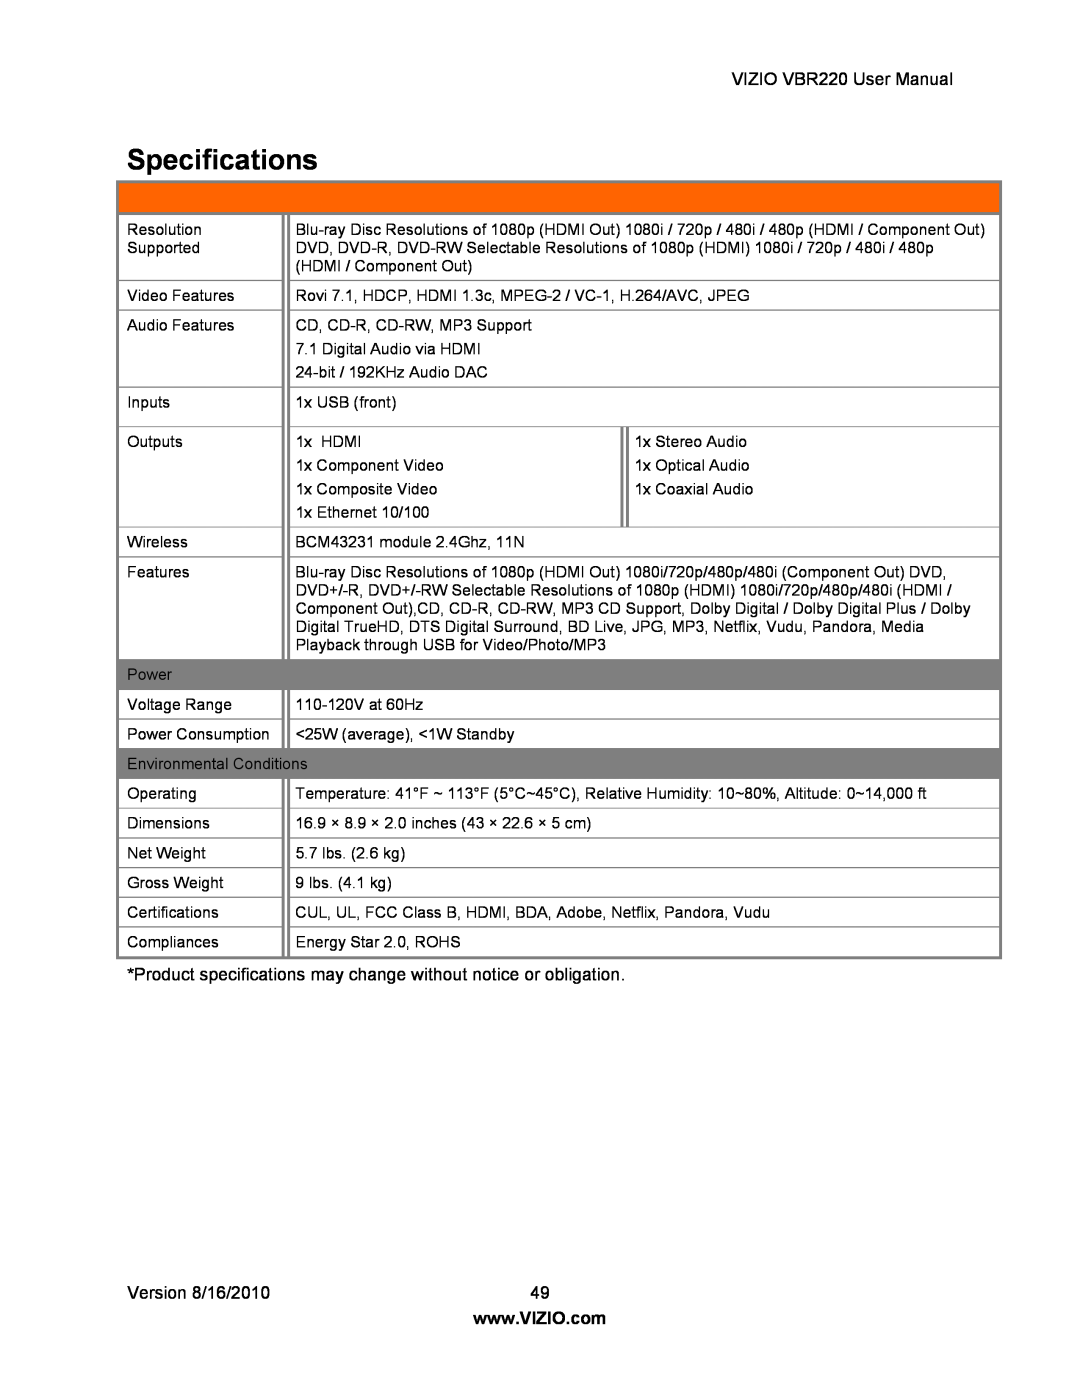 Panasonic VBR220 user manual Specifications 